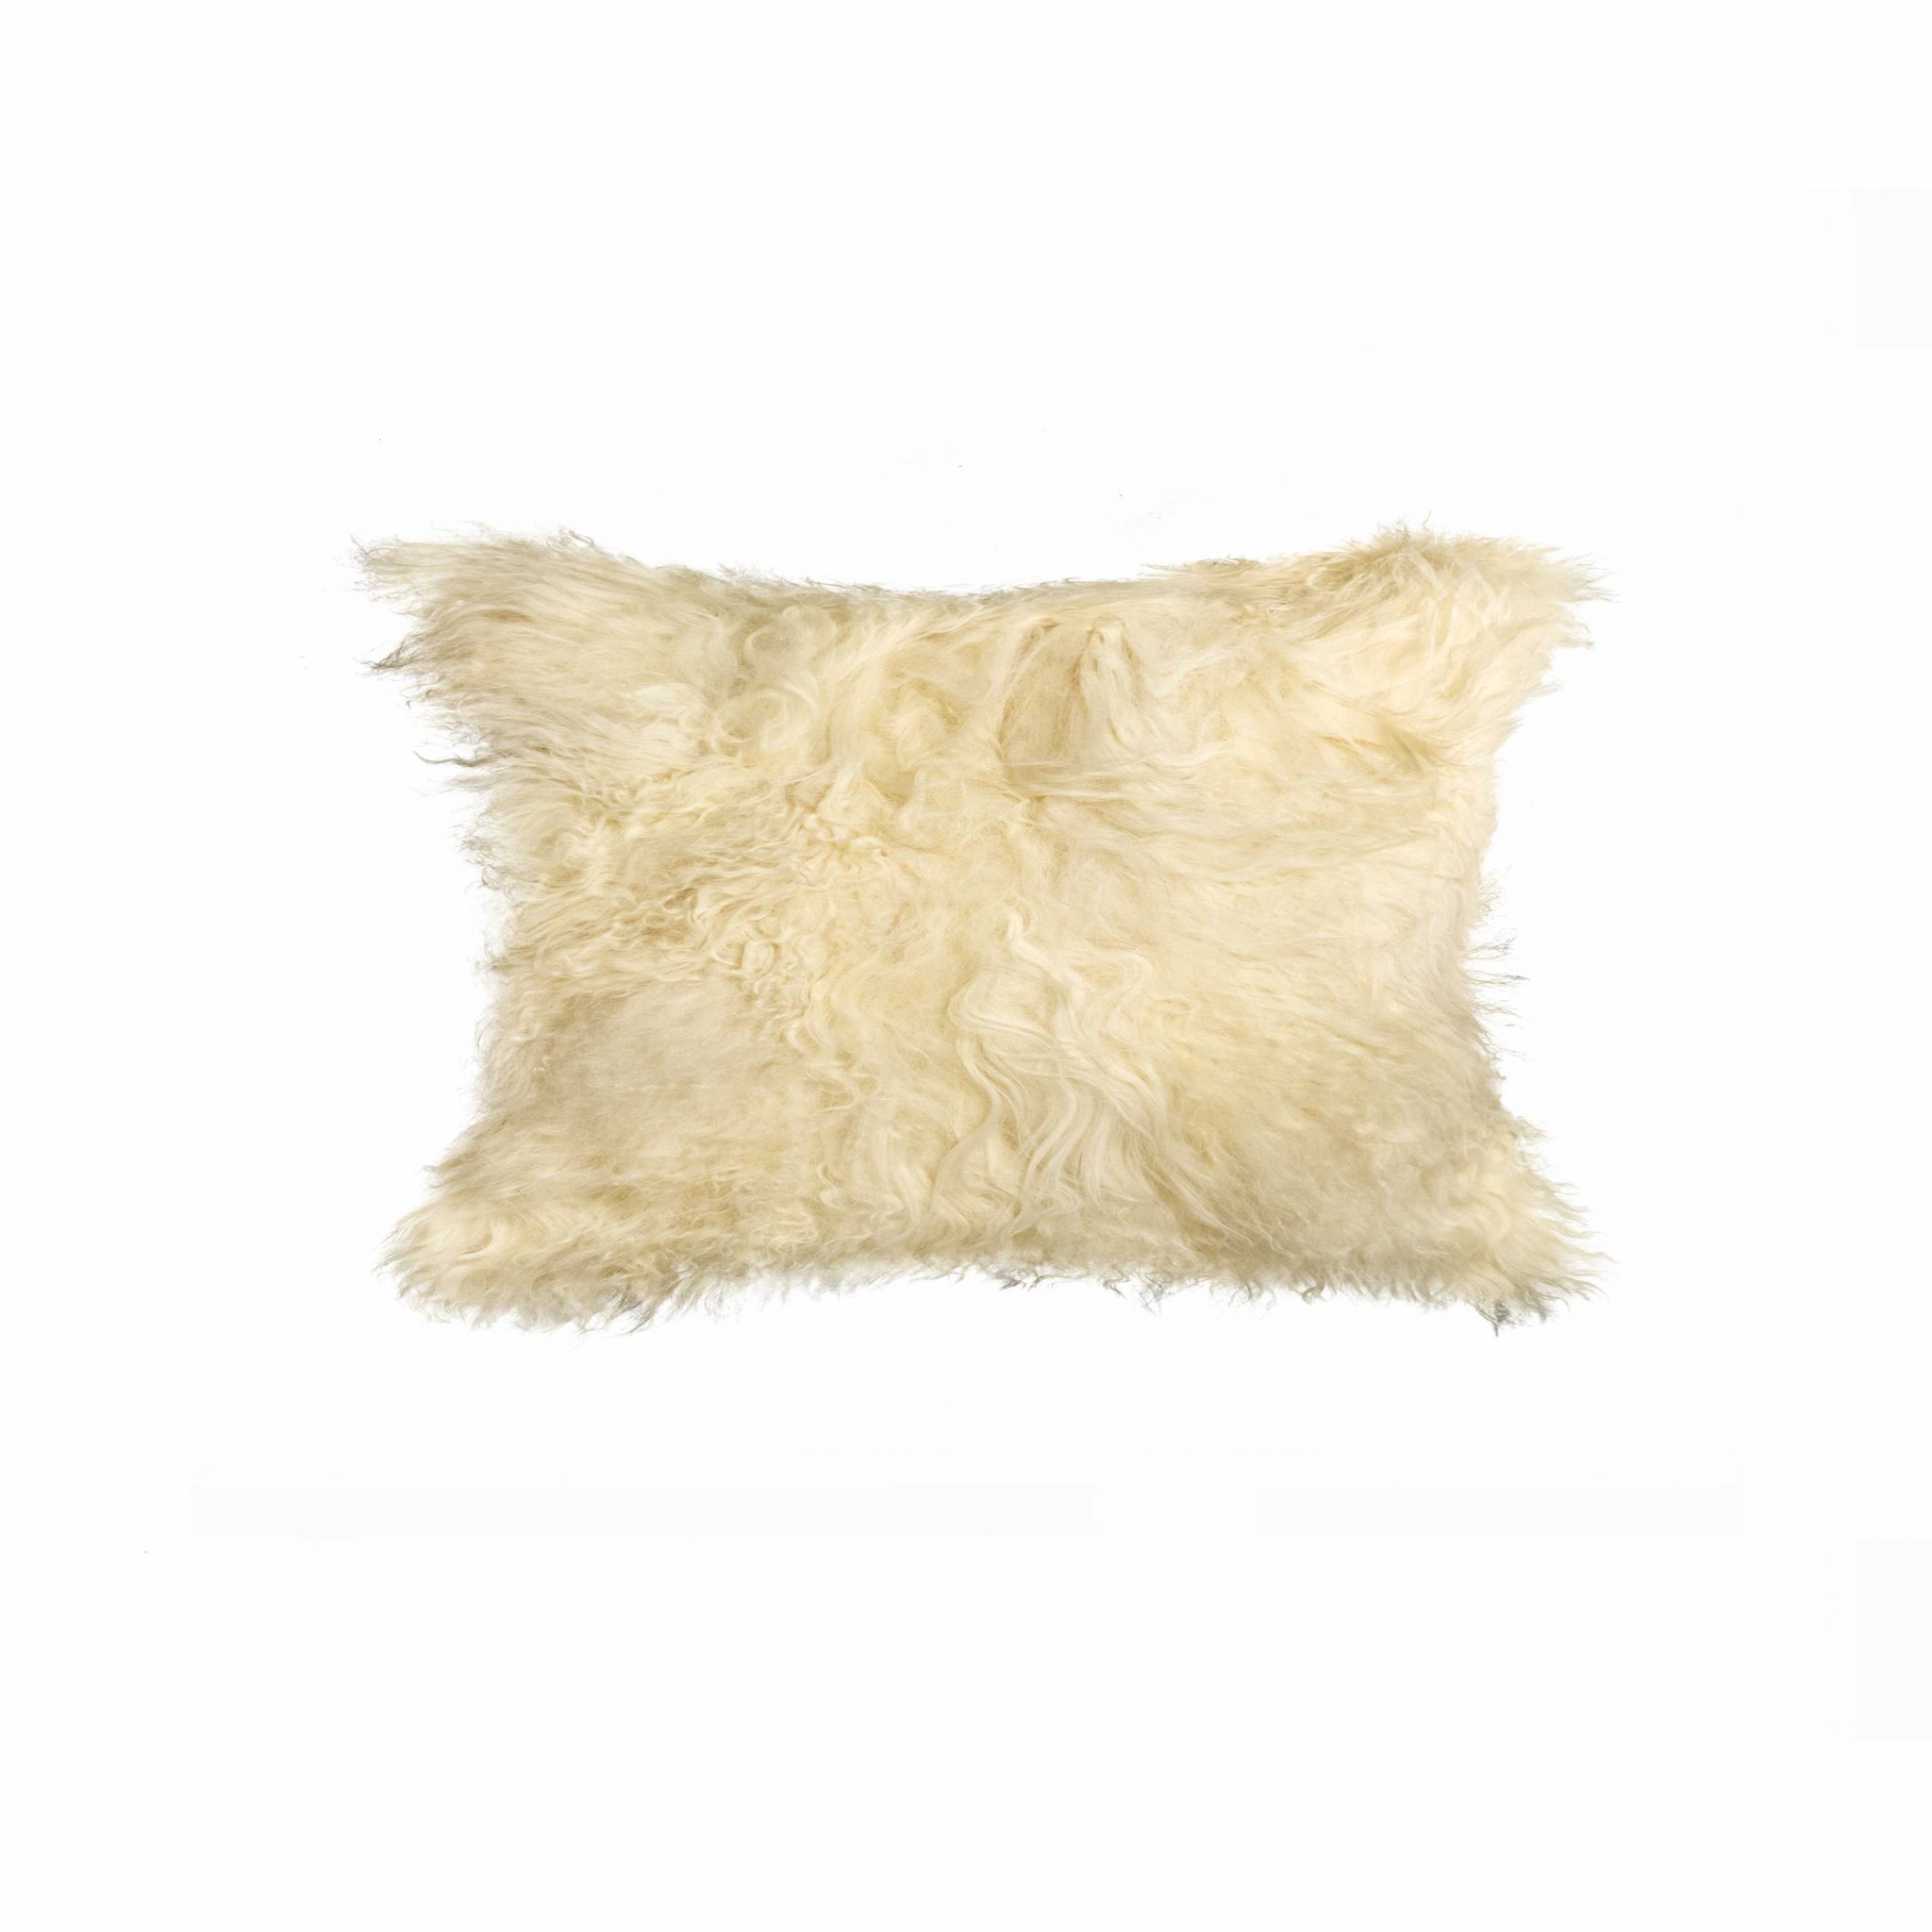 12" x 20" x 5" Natural Sheepskin - Pillow